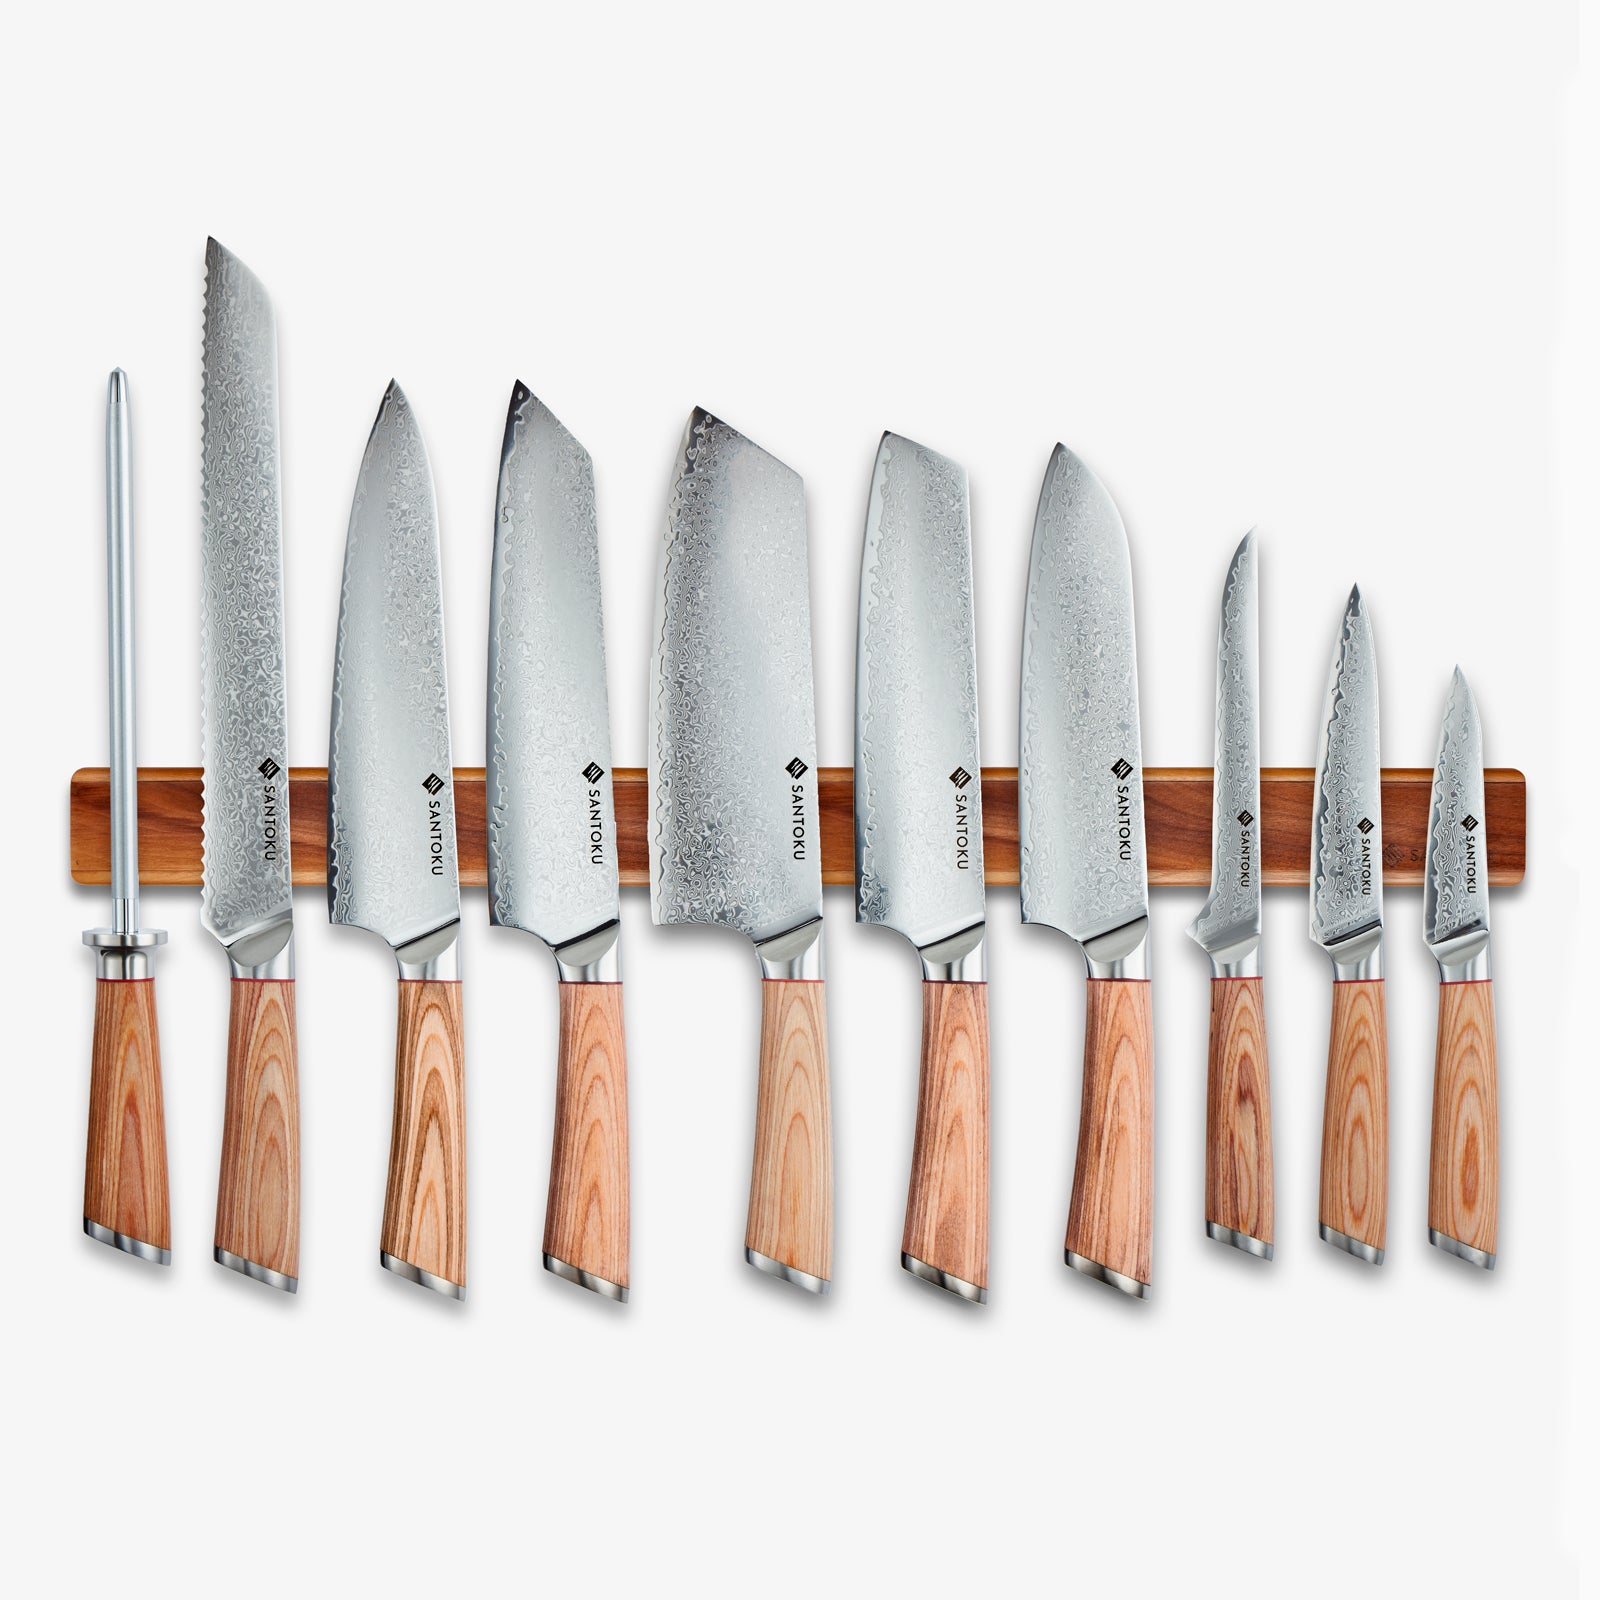 Haruta (はる はる) 67 Layer Aus 10 Damaskus Steel Kitchen Knive